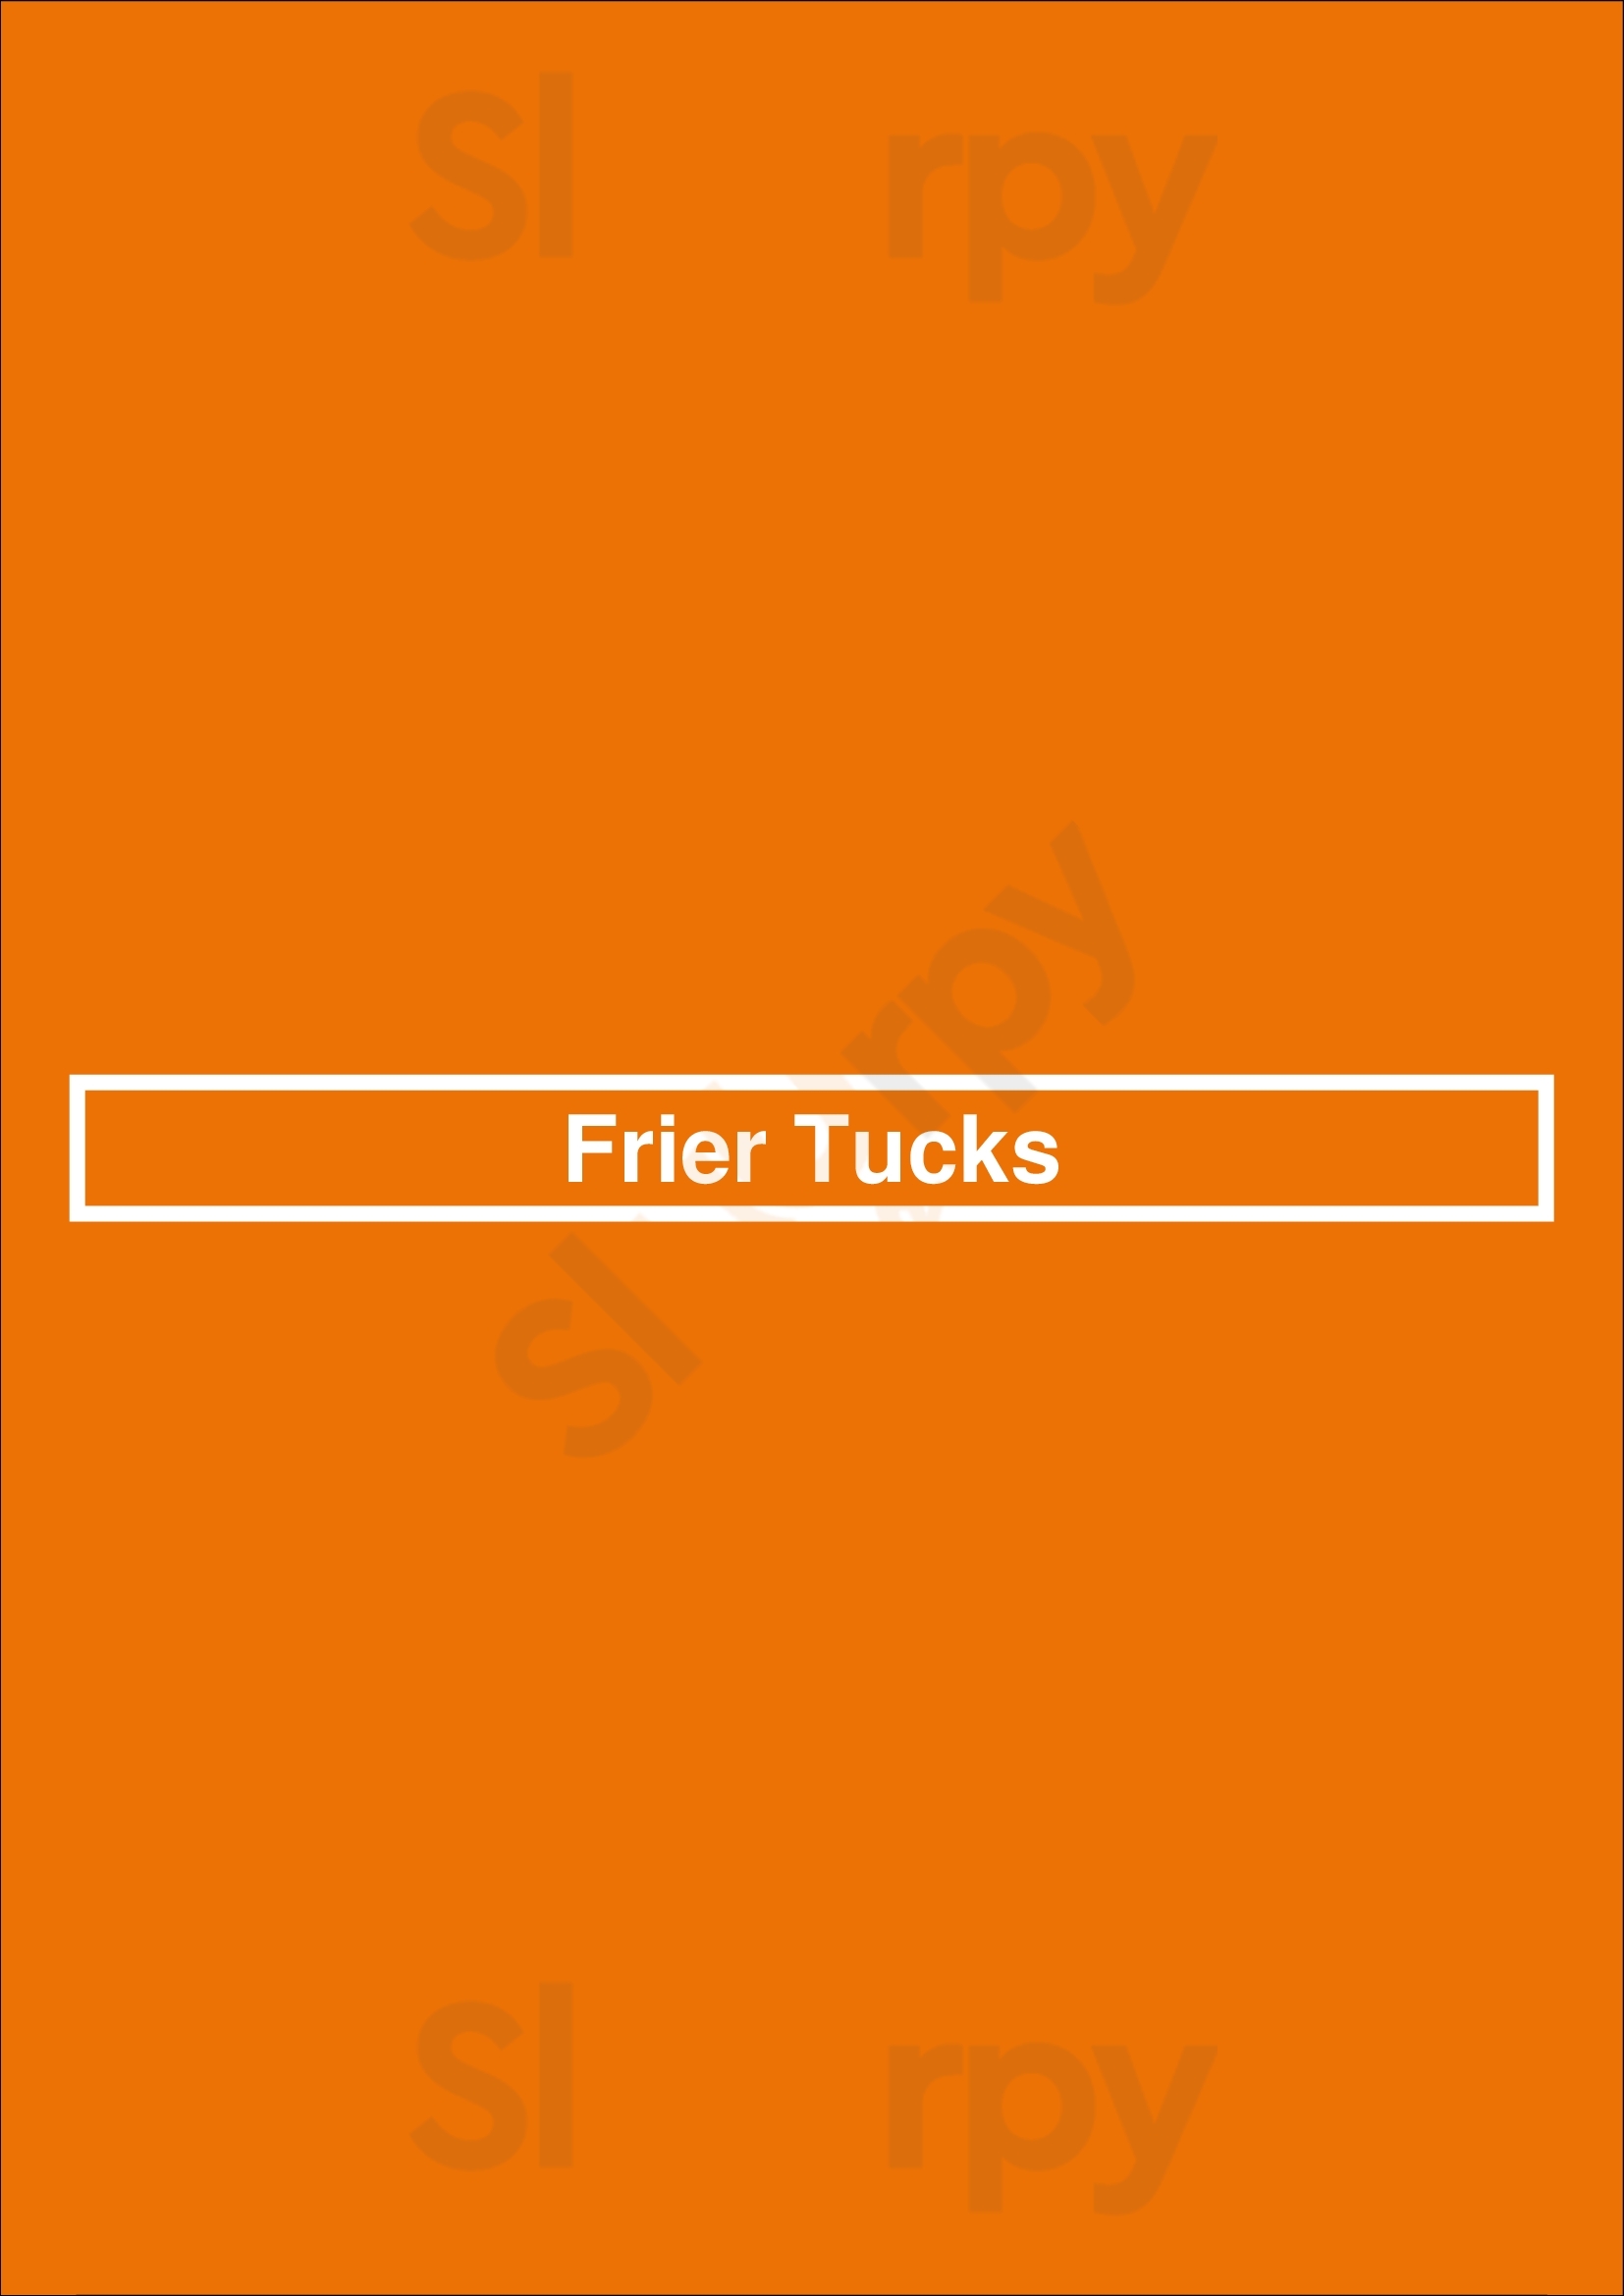 Frier Tucks York Menu - 1